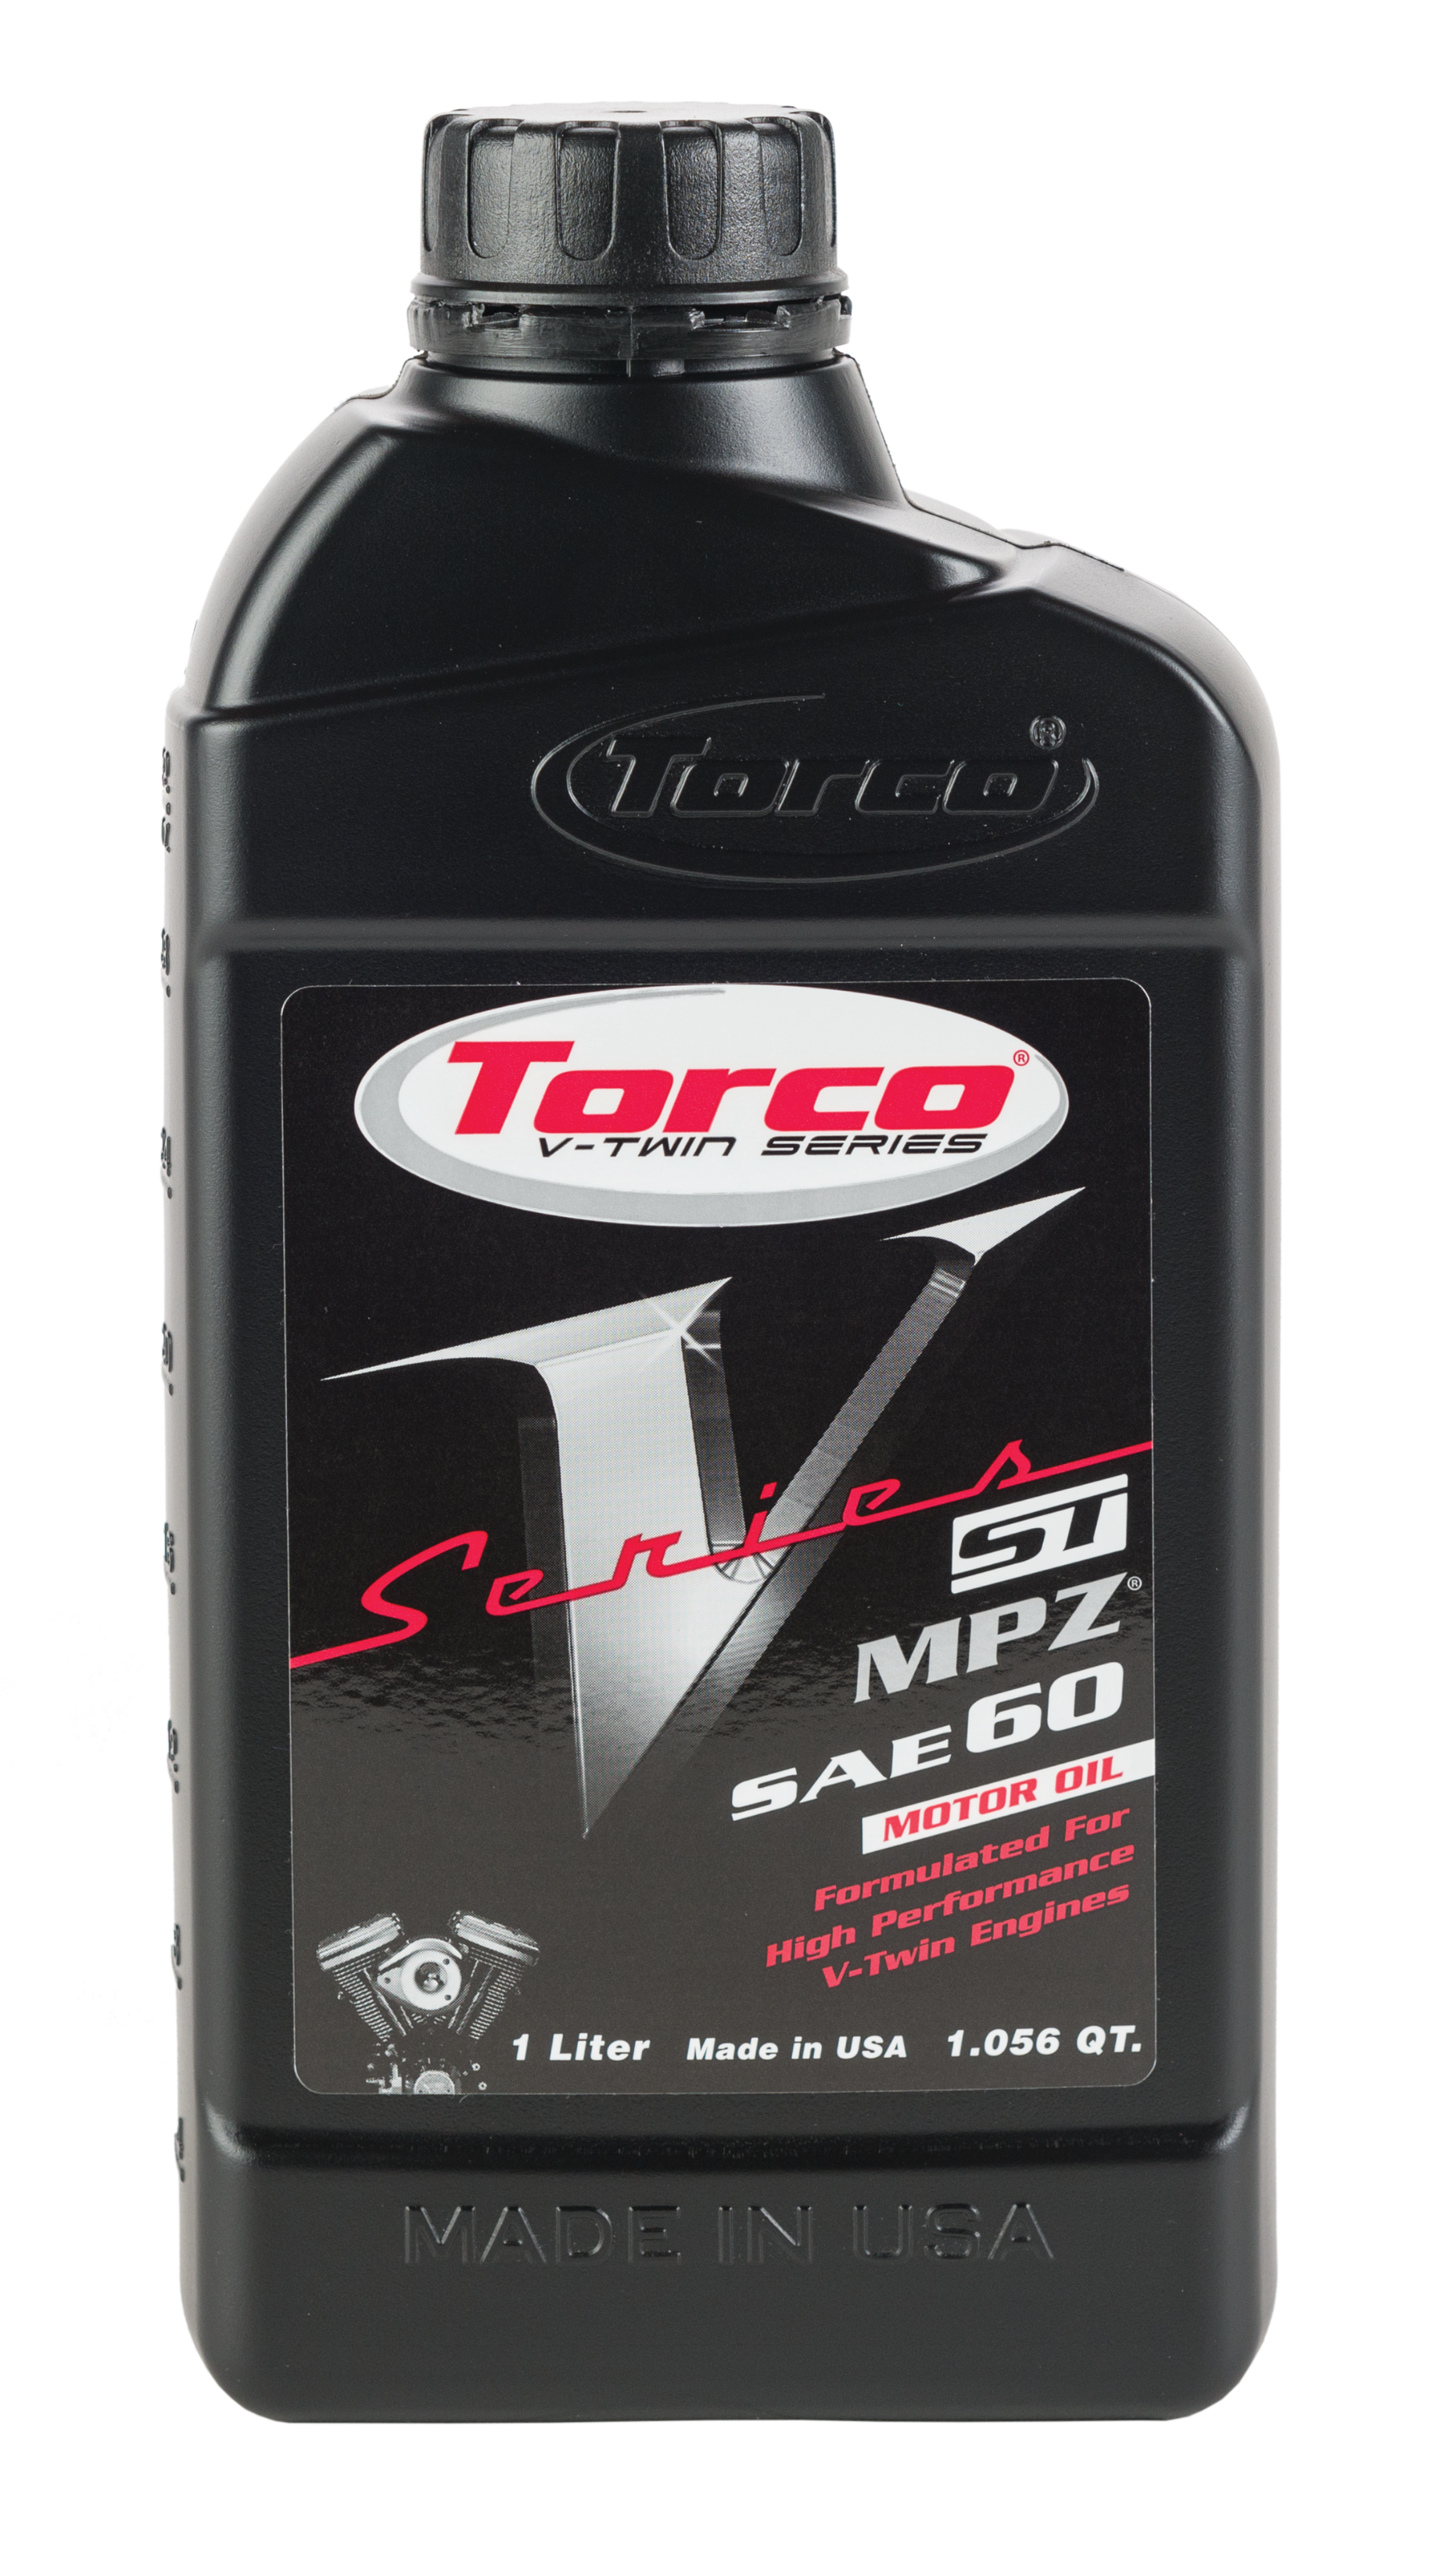 Torco - V-series St Motor Oil 60w Liter - T630060CE